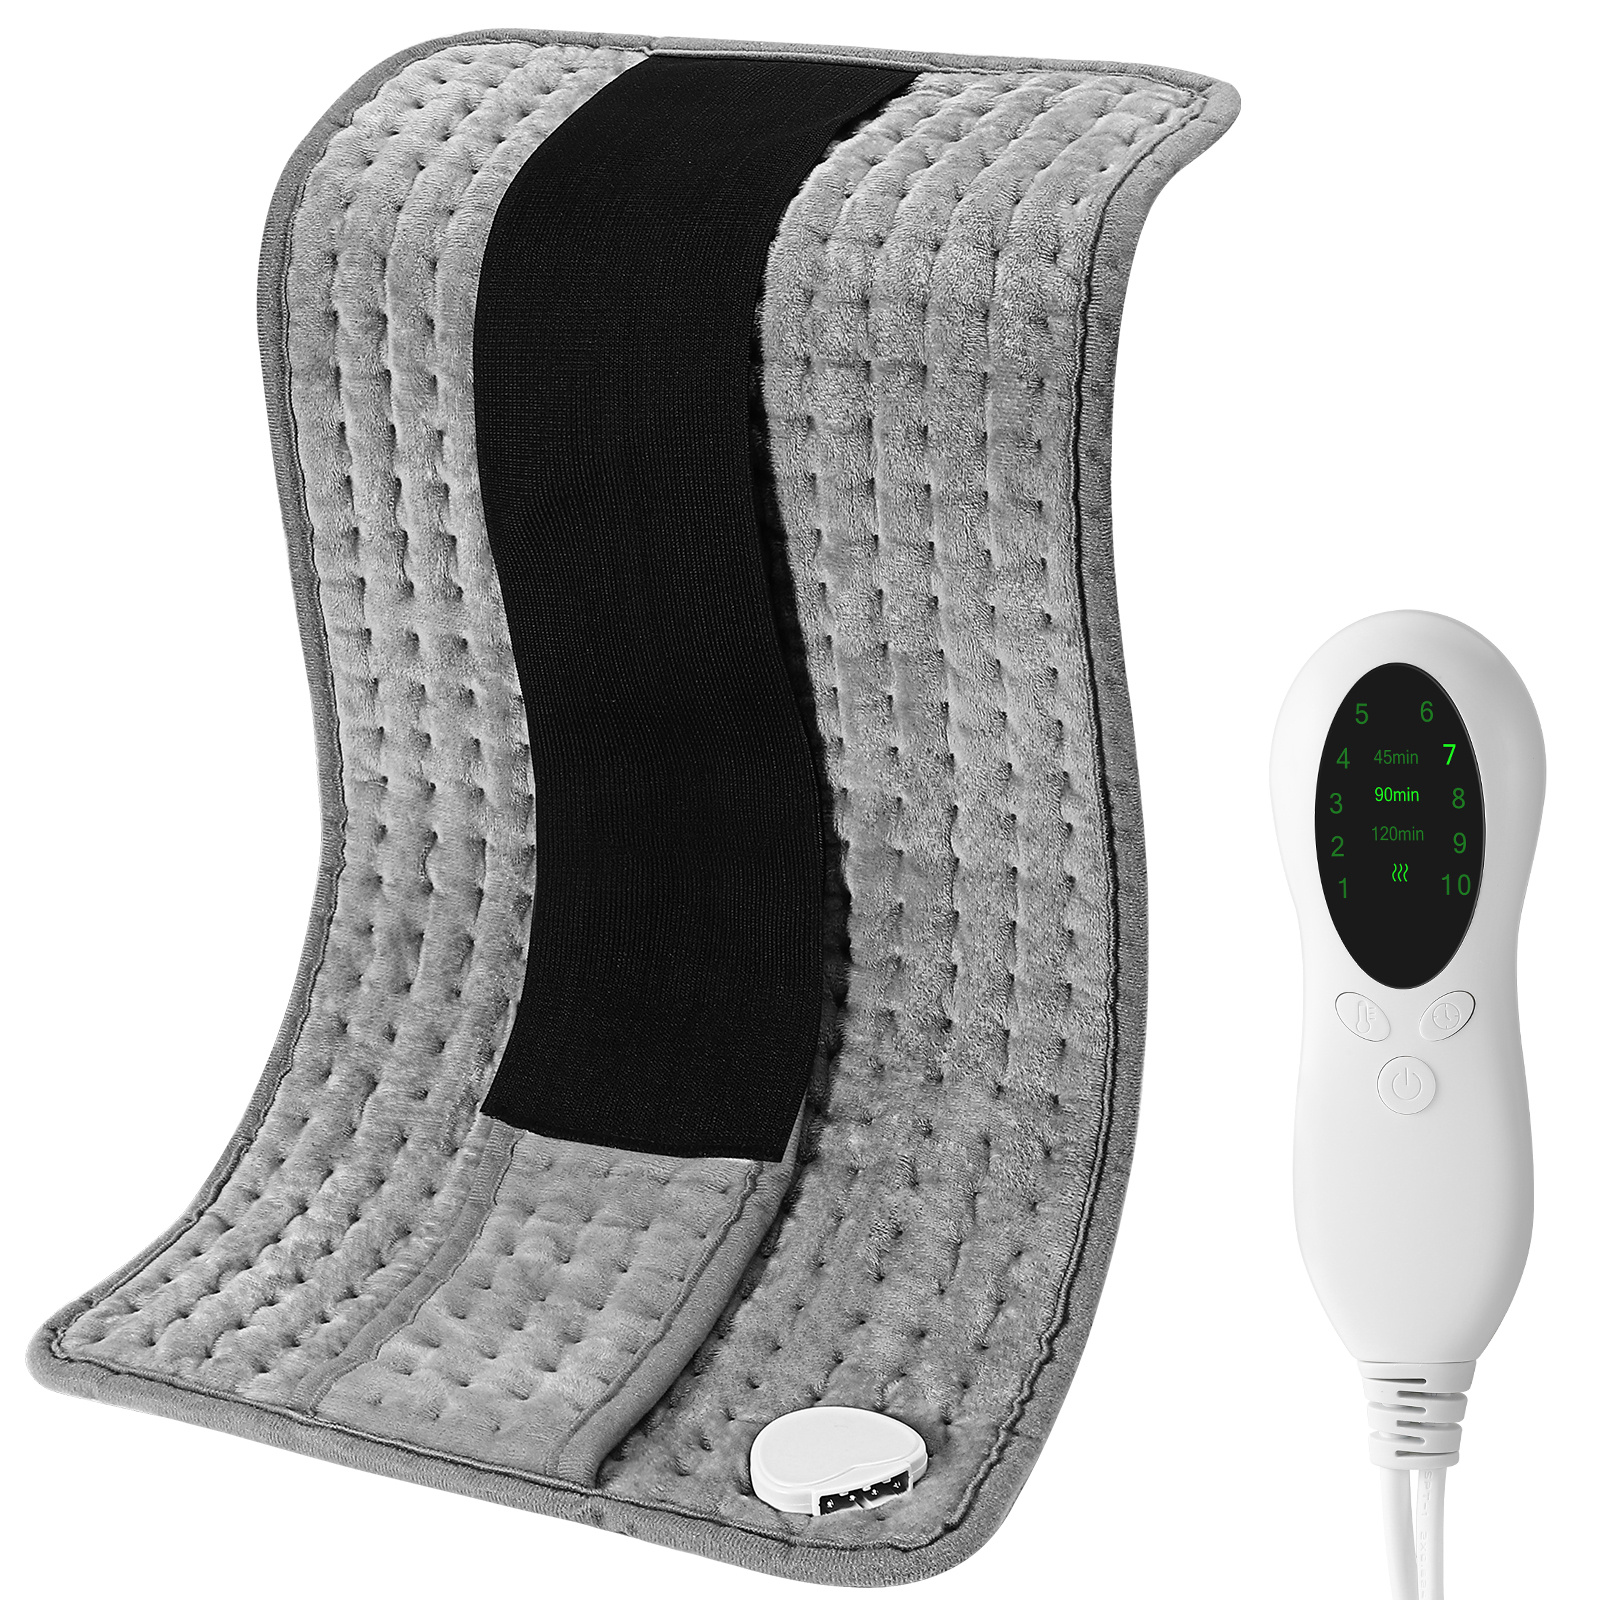 CAROMIO - Almohadilla térmica para aliviar el dolor de espalda,  almohadillas térmicas eléctricas extragrandes de 33 x 17 pulgadas para  calambres